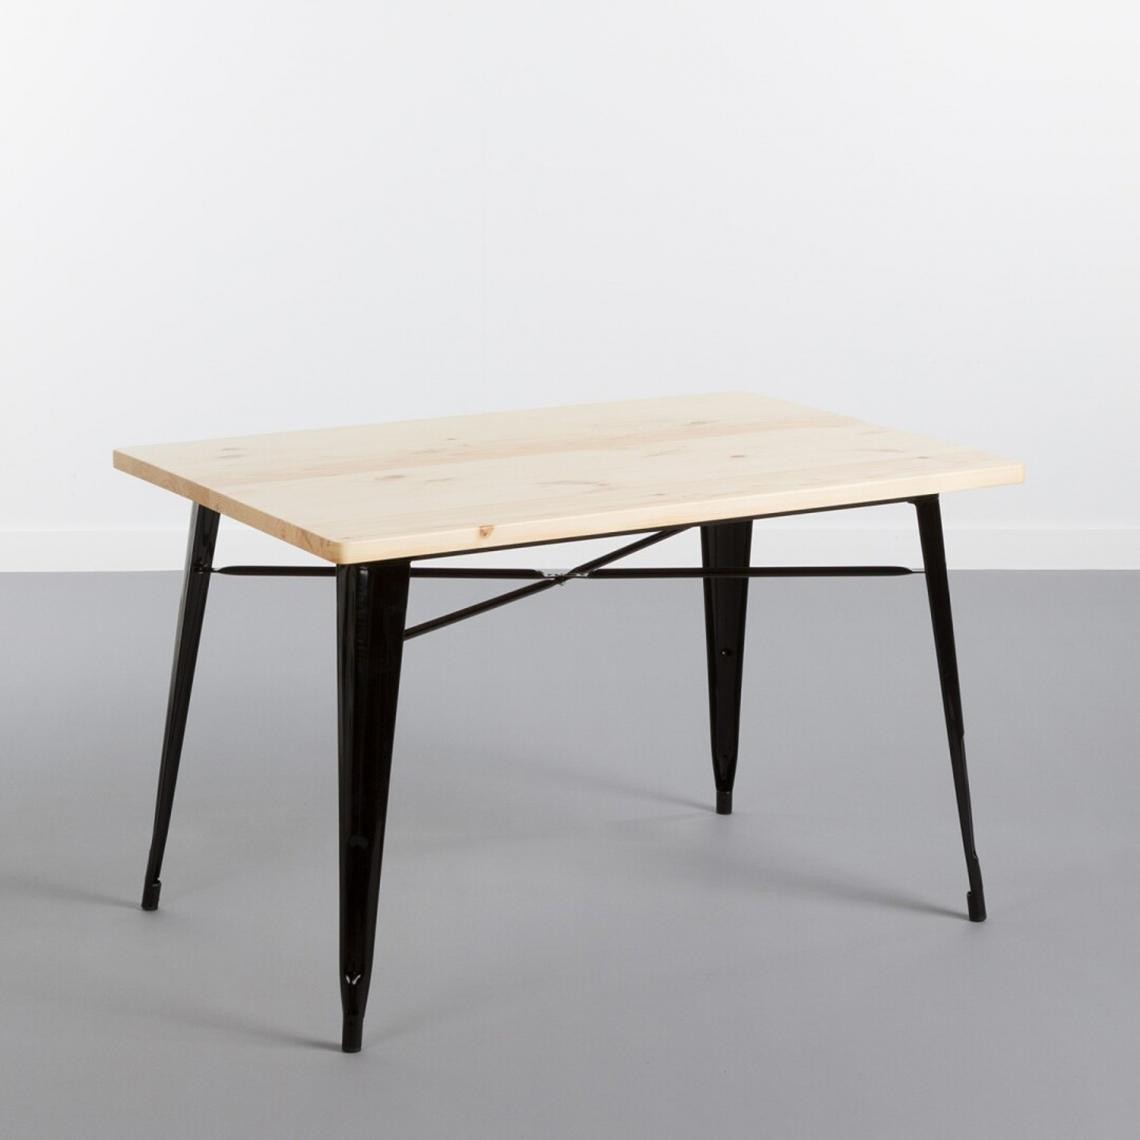 Pegane - Table à manger en bois chêne et pieds en métal Noir - Profondeur 80 x Longueur 120 x Hauteur 74 cm - Tables à manger